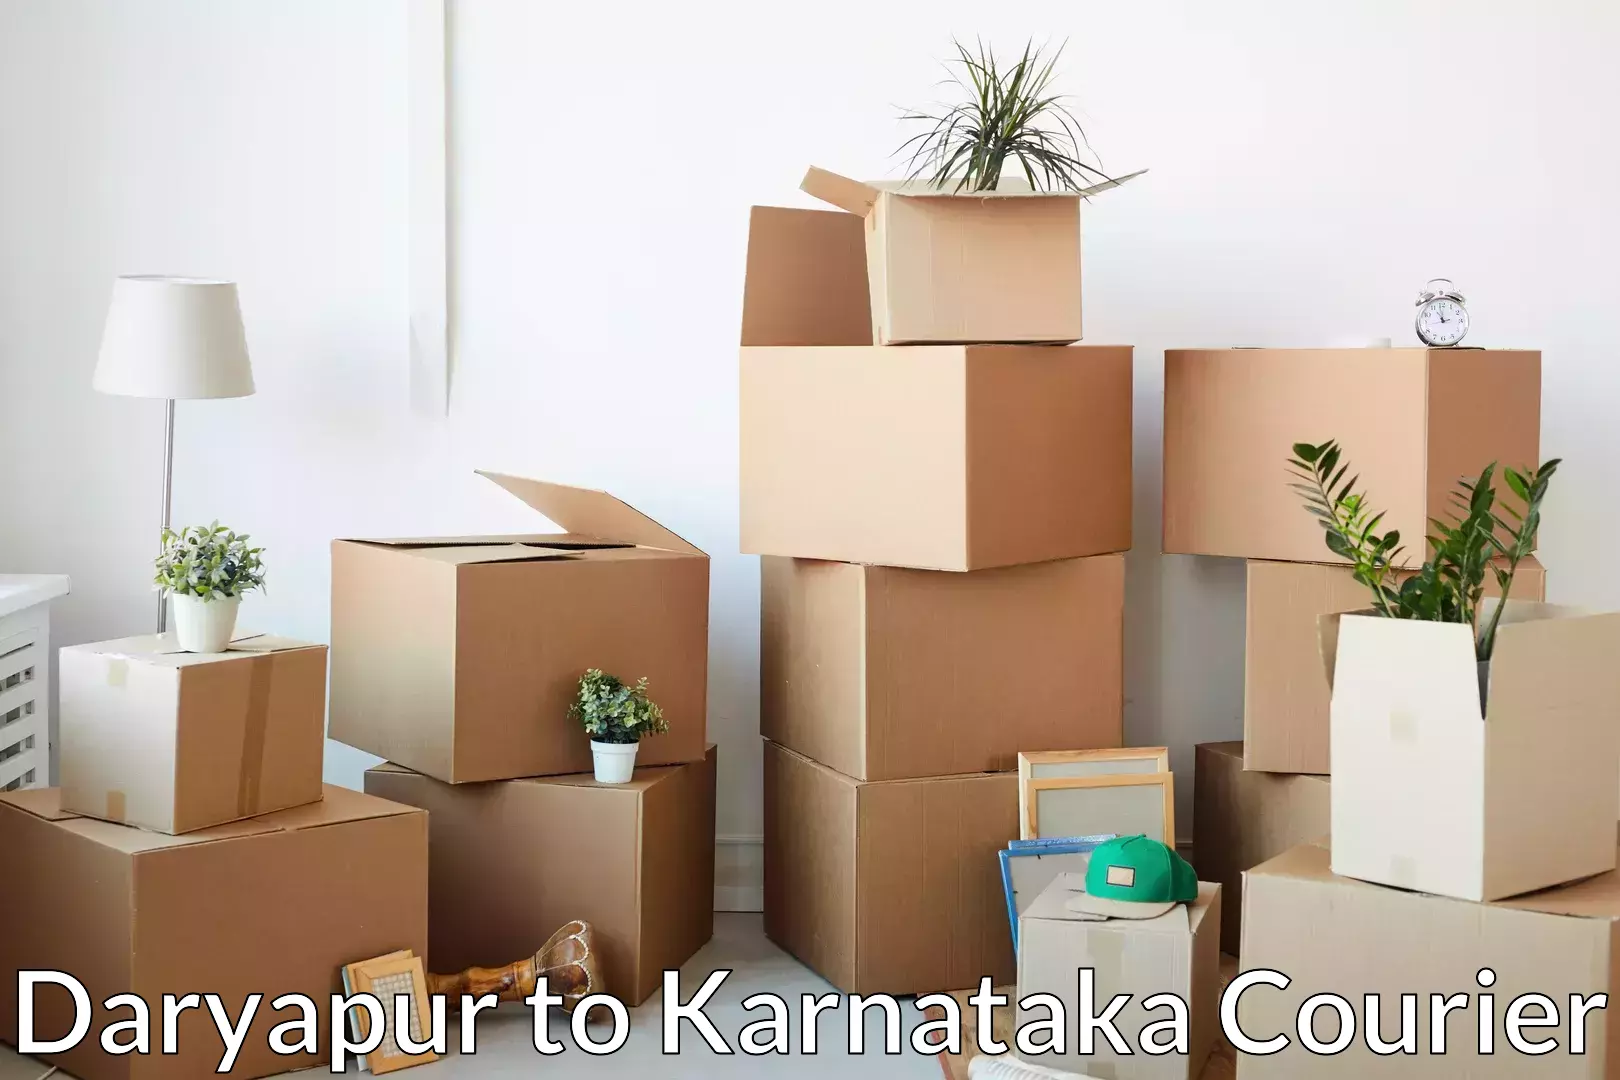 Professional moving assistance Daryapur to Yenepoya Mangalore